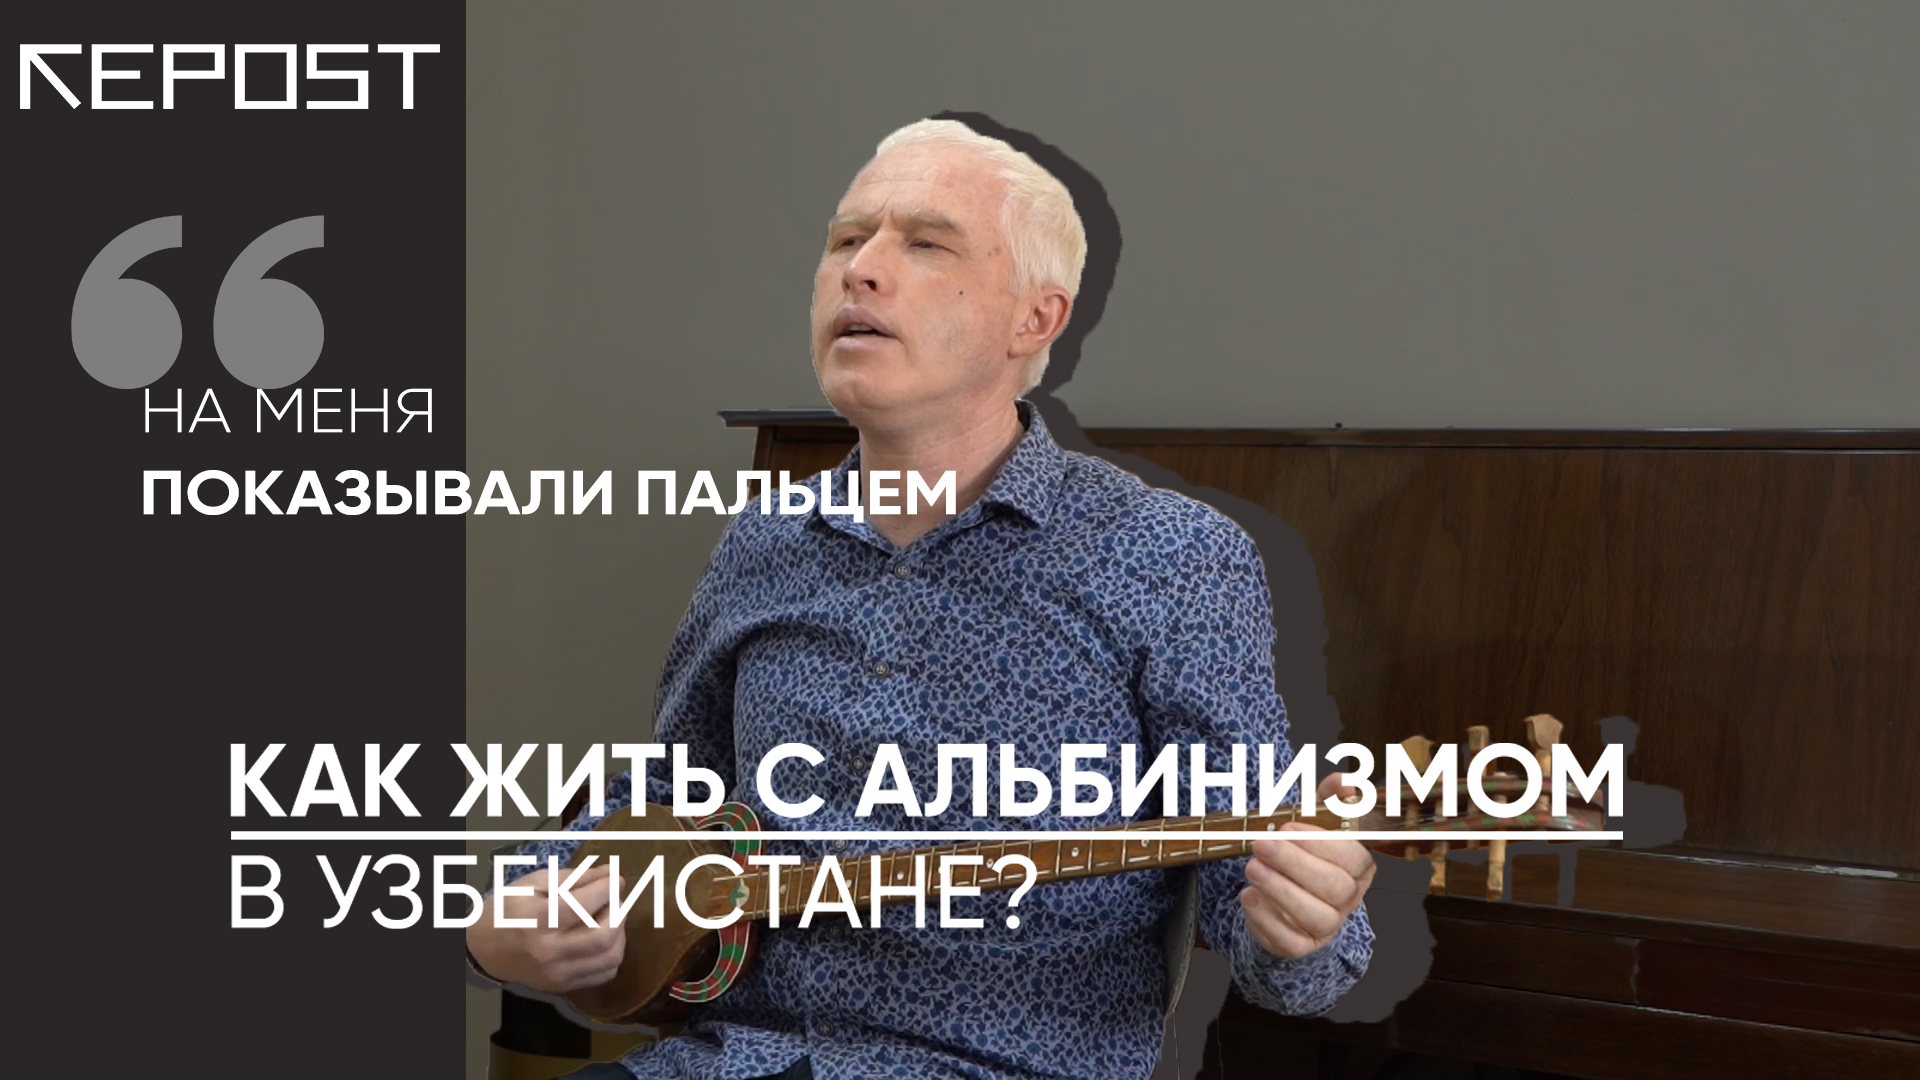 Жизнь альбиноса в Узбекистане — с какими проблемами он сталкивается? — видео